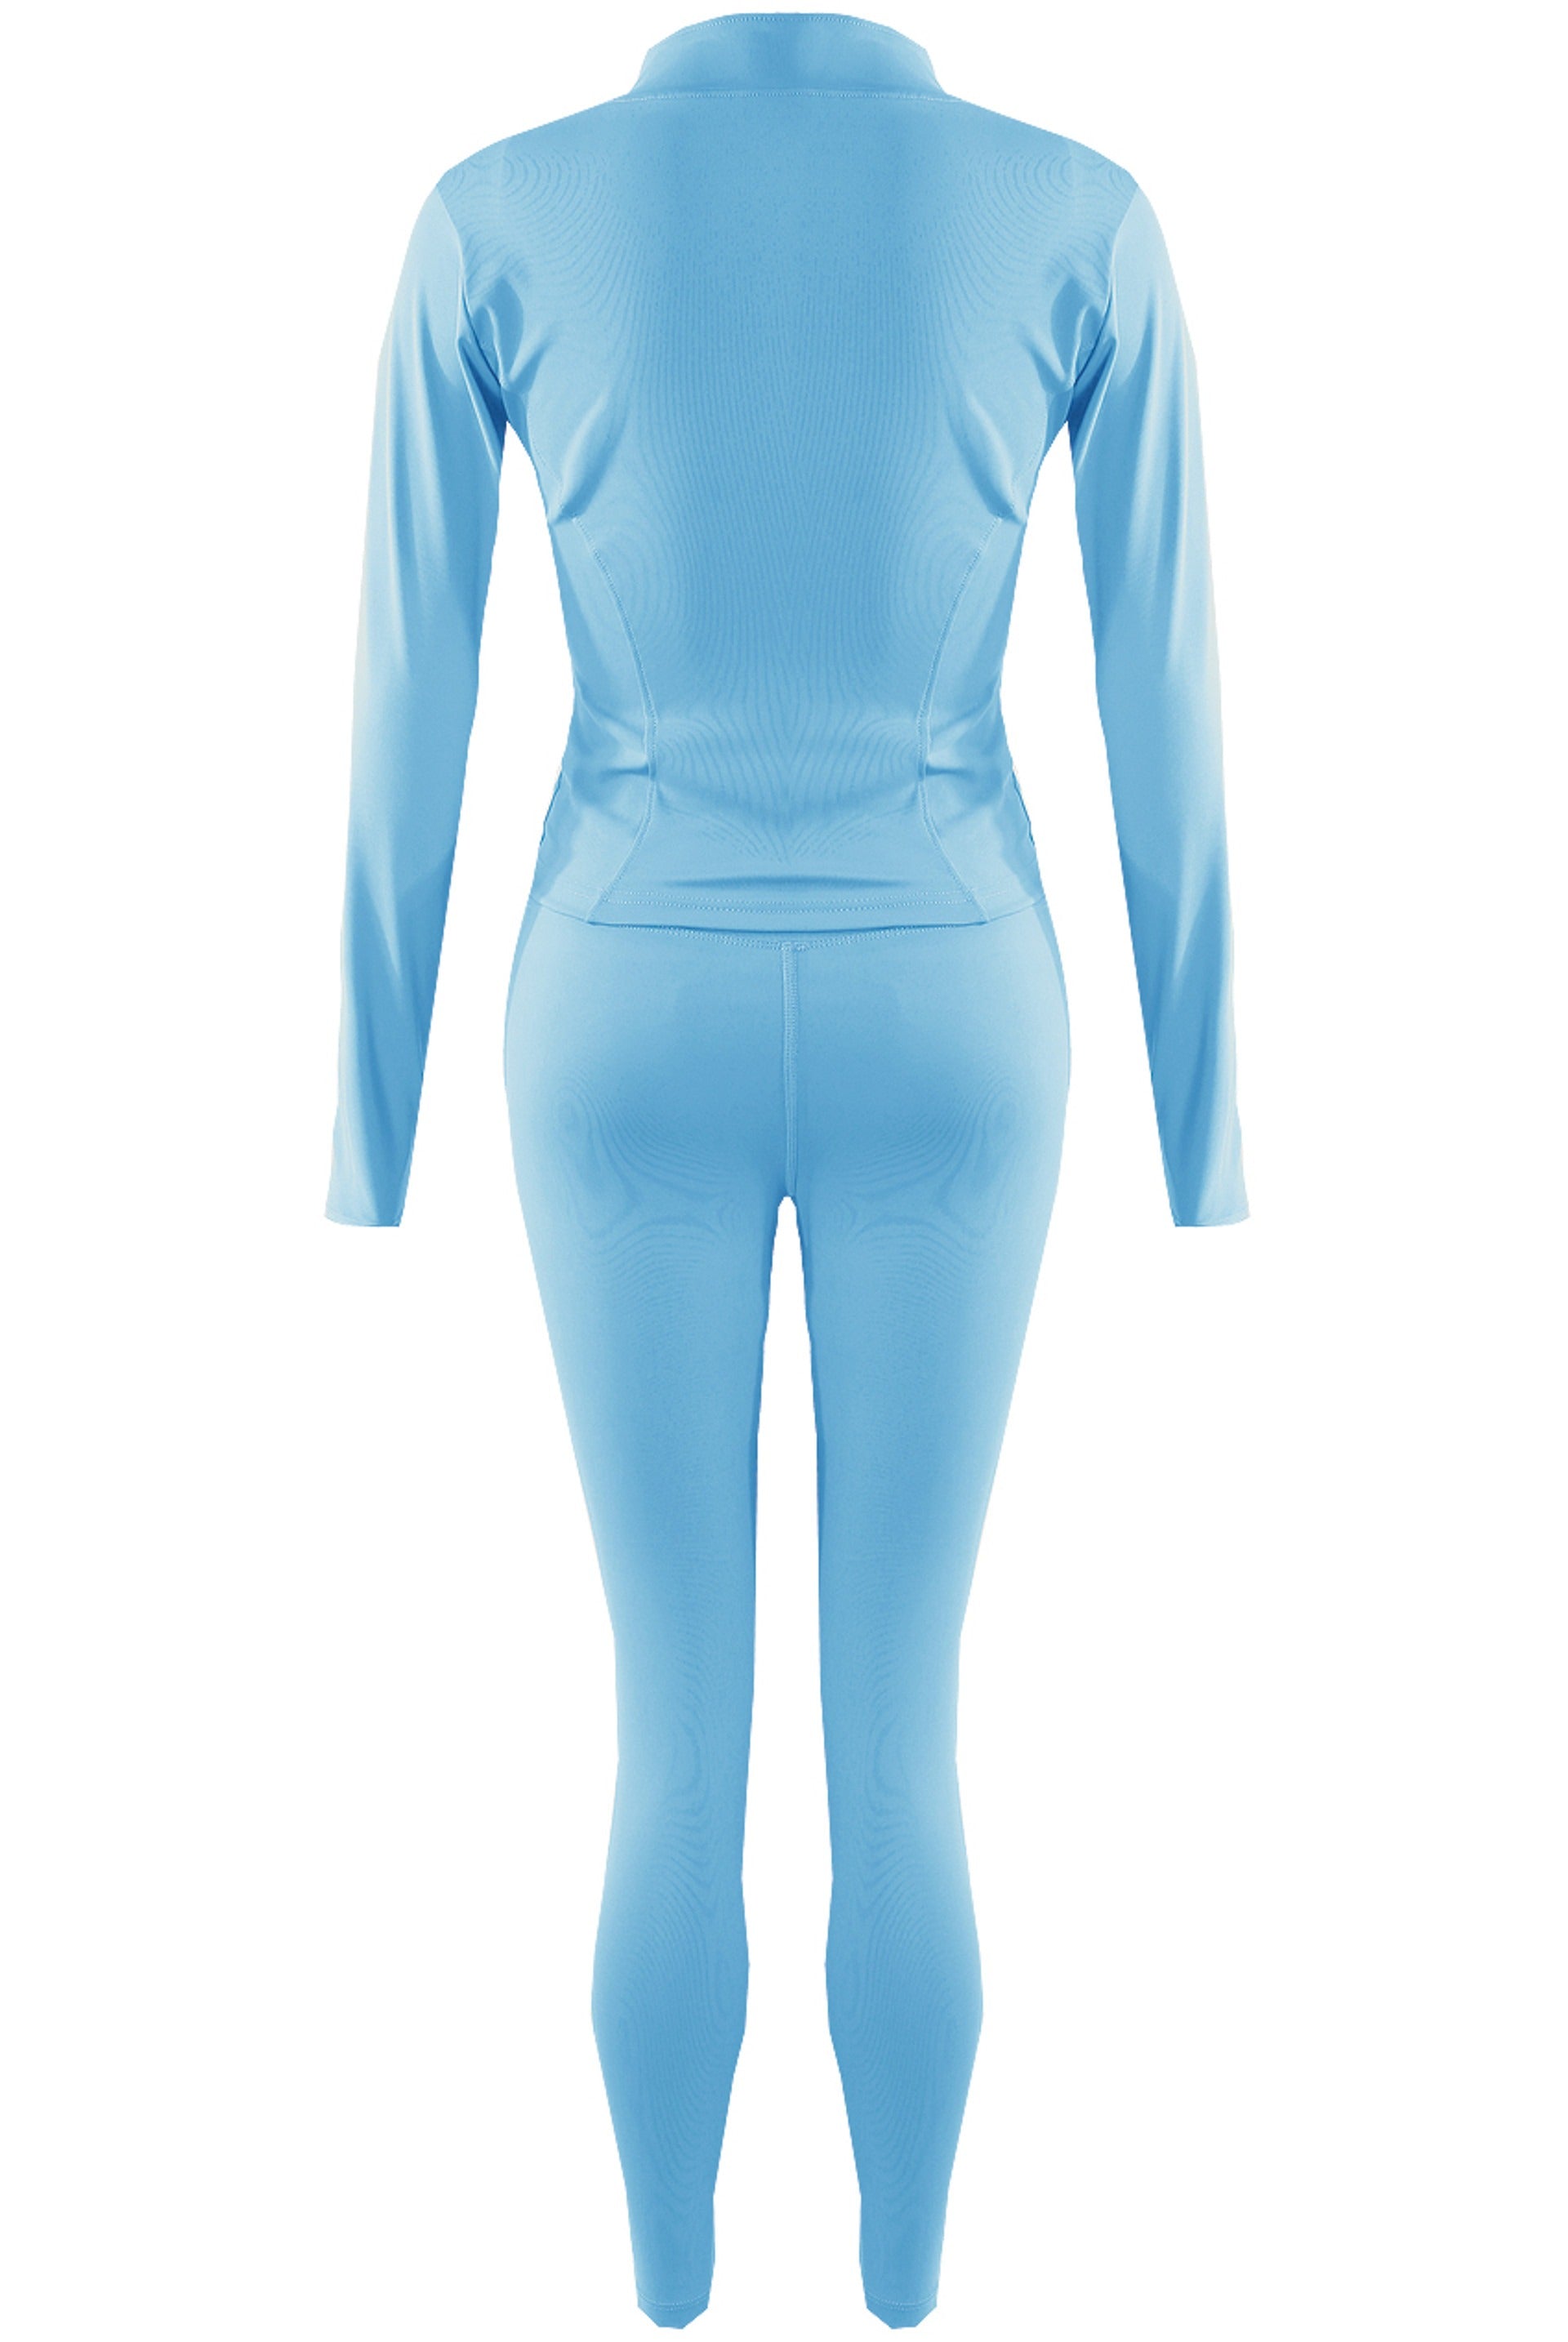 Blue Zip Long Sleeve Top And Legging Energy Gym Set - Sadie - Storm Desire